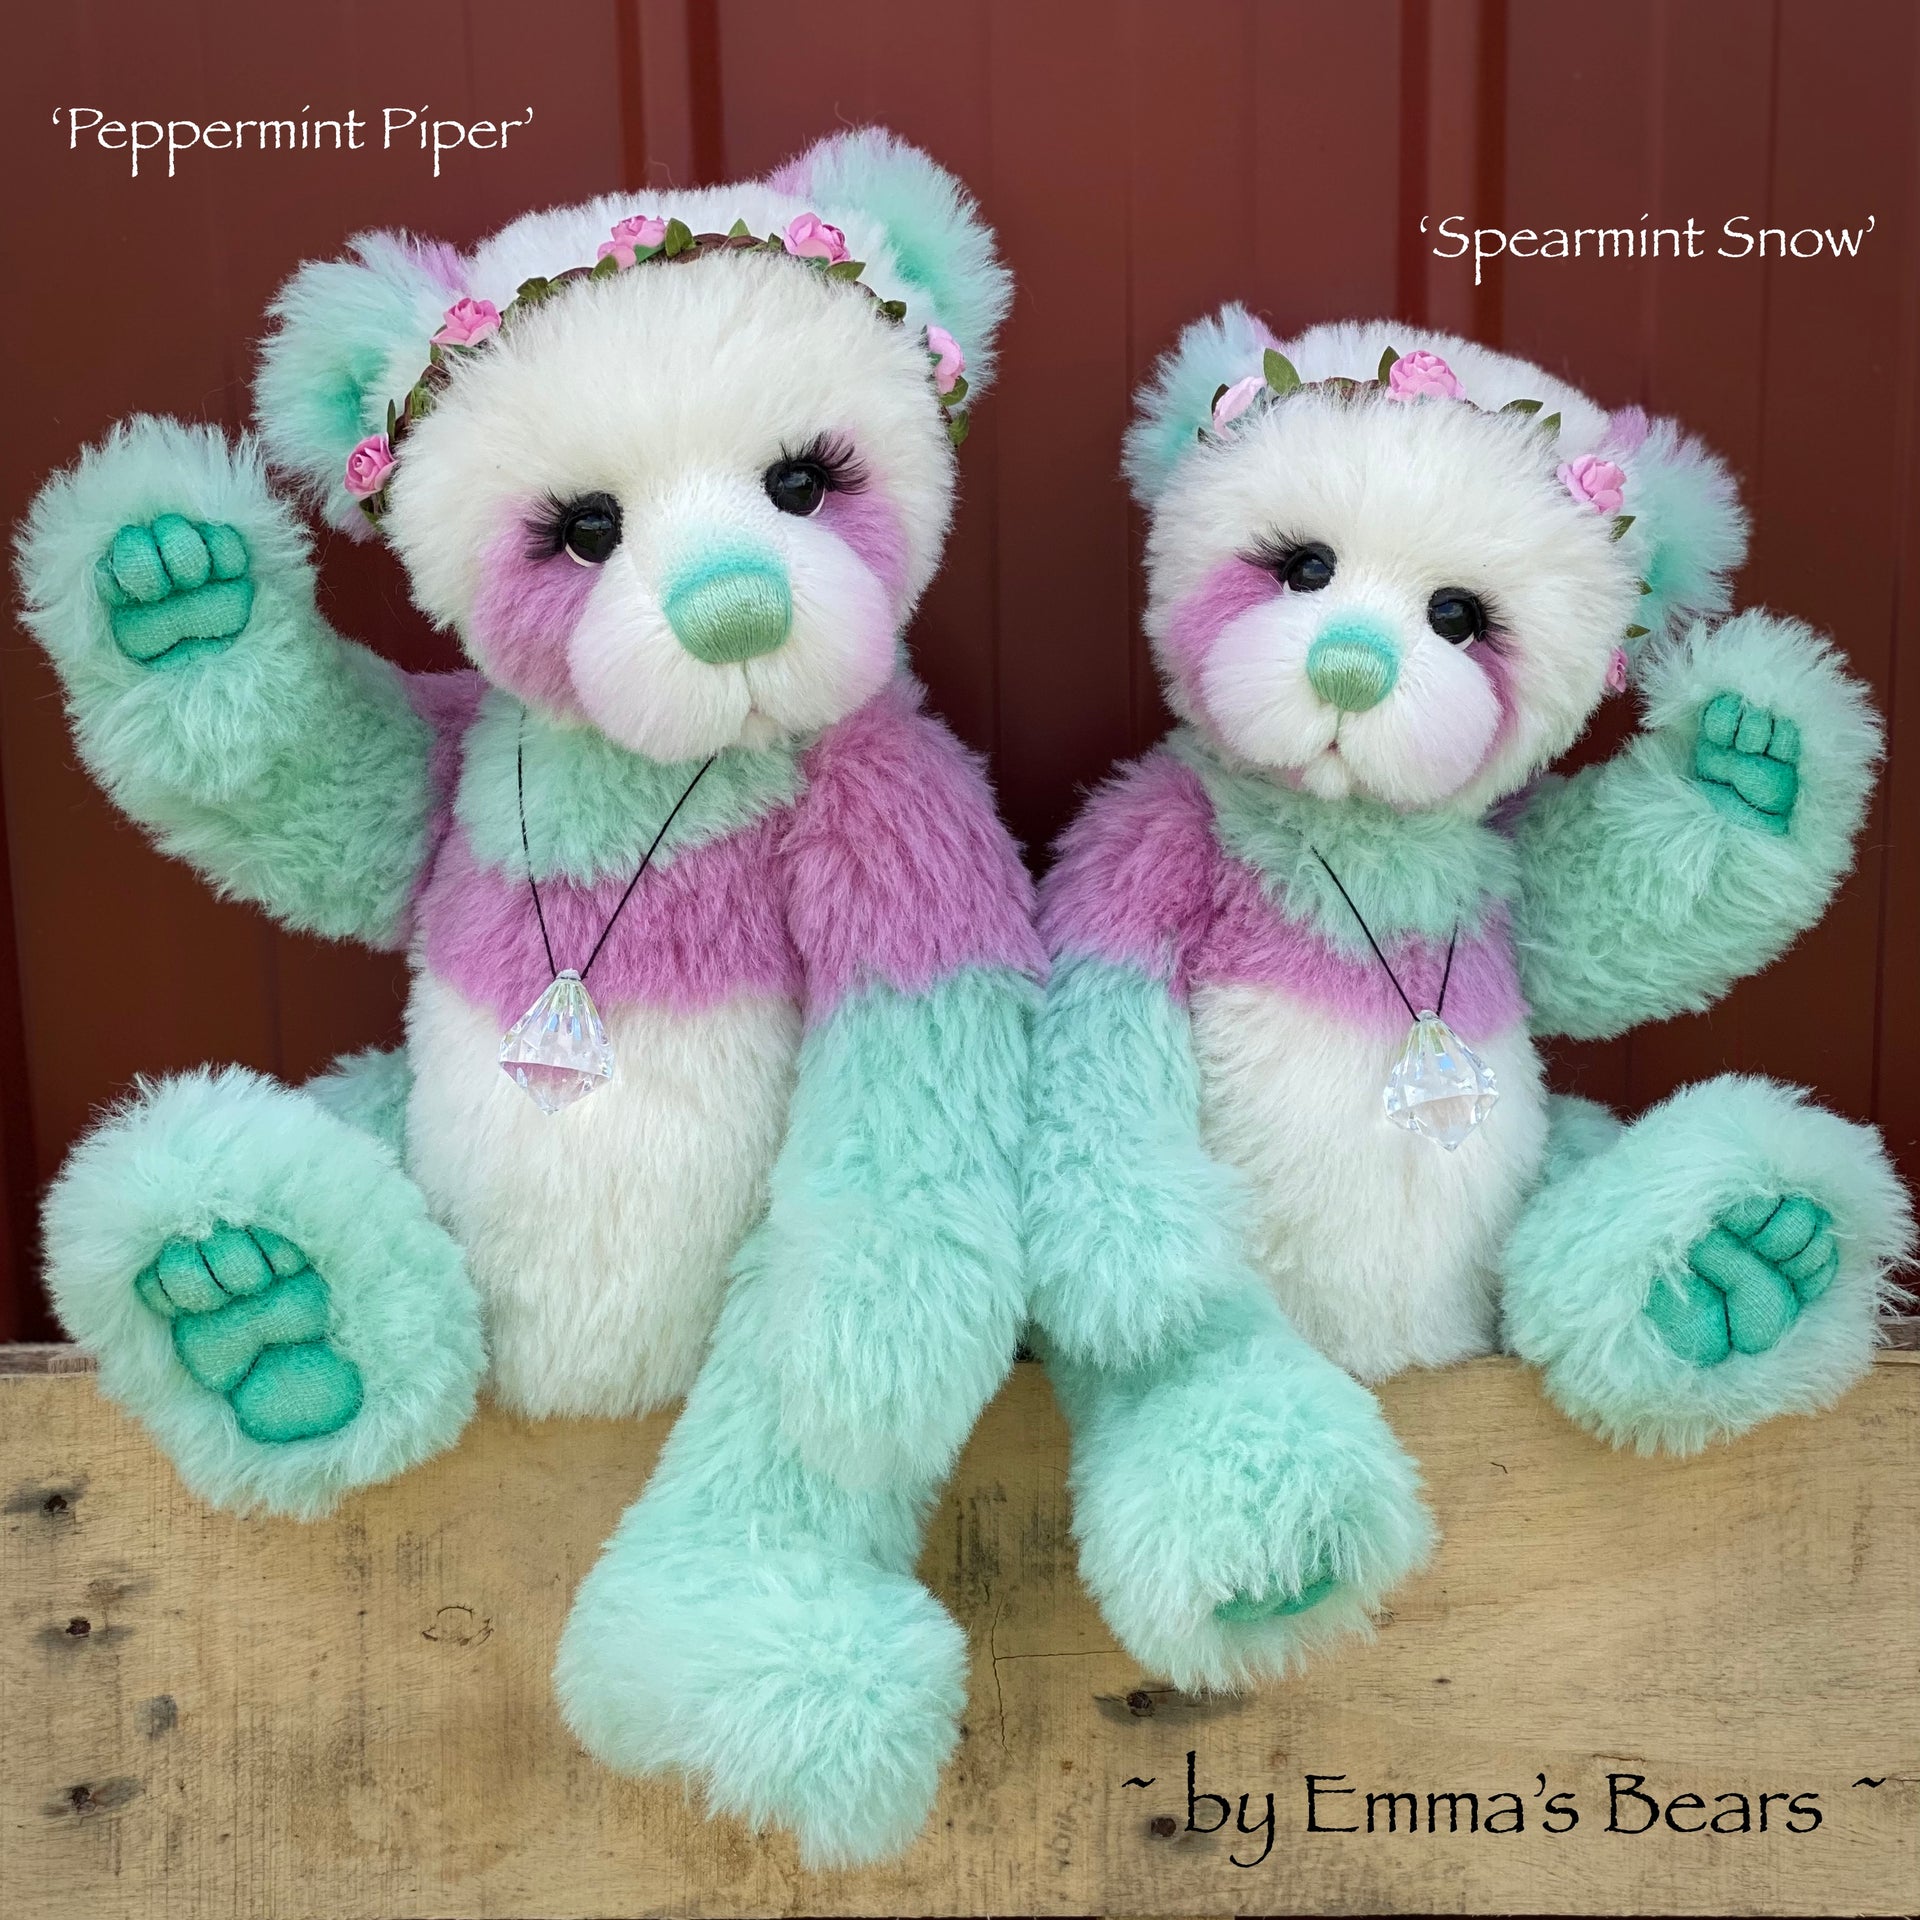 Spearmint Snow - 15" hand dyed alpaca artist bear by Emma's Bears - OOAK